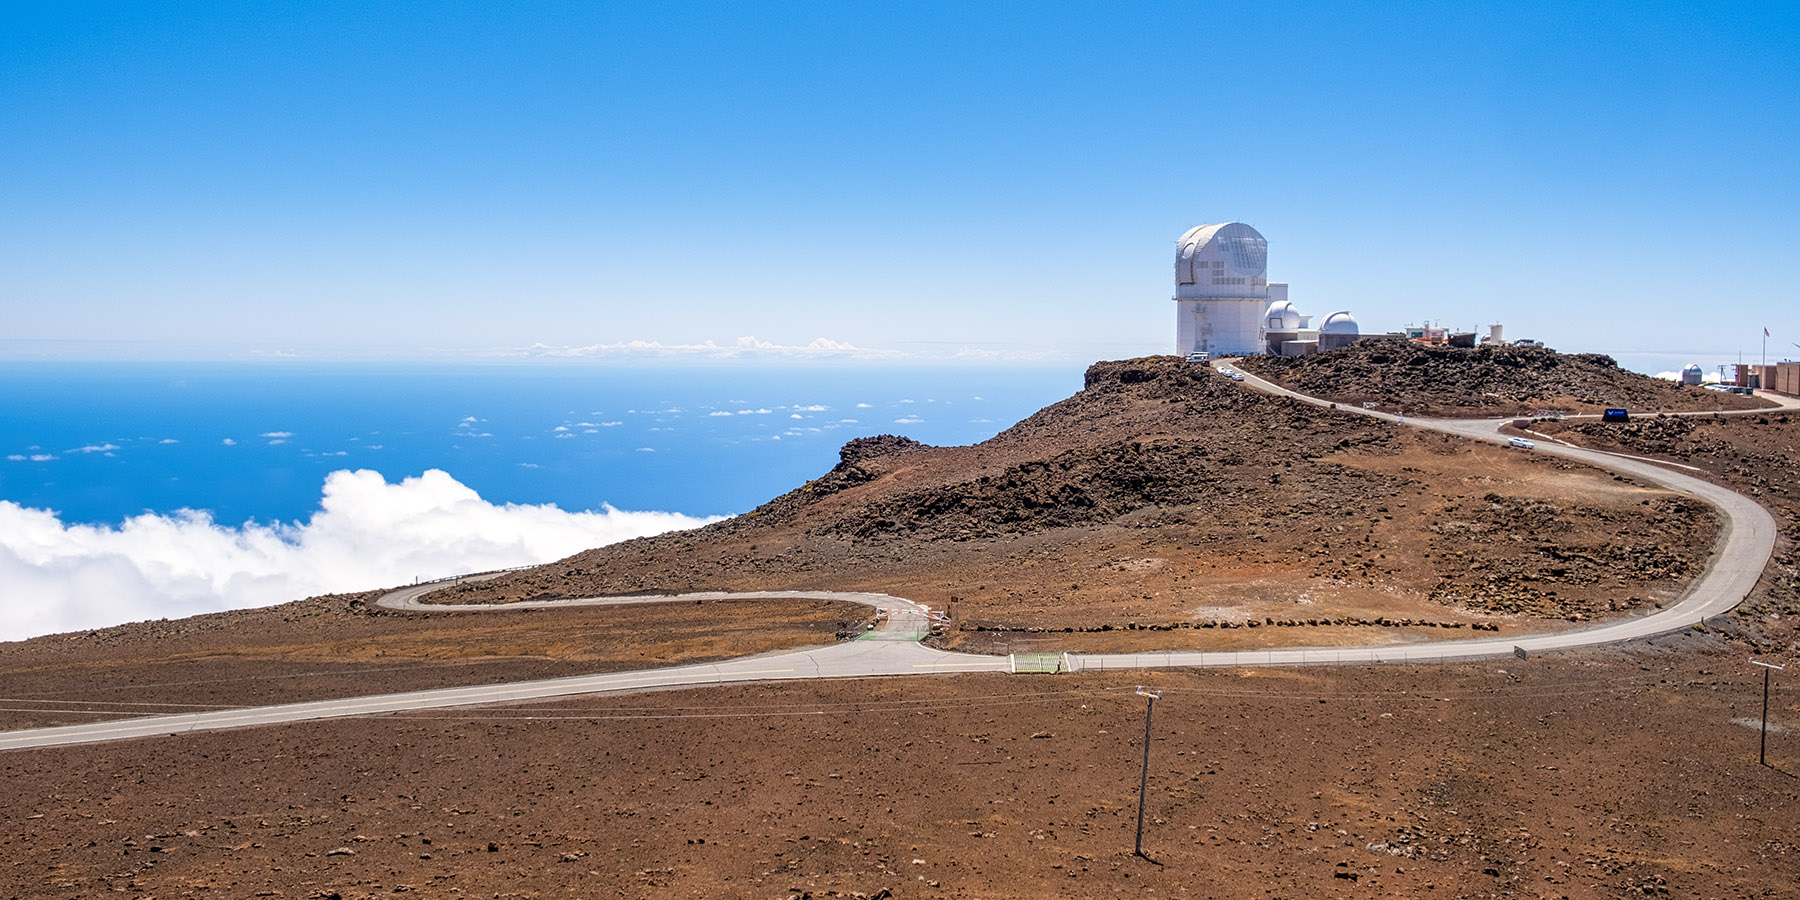 The Haleakalā Observatory